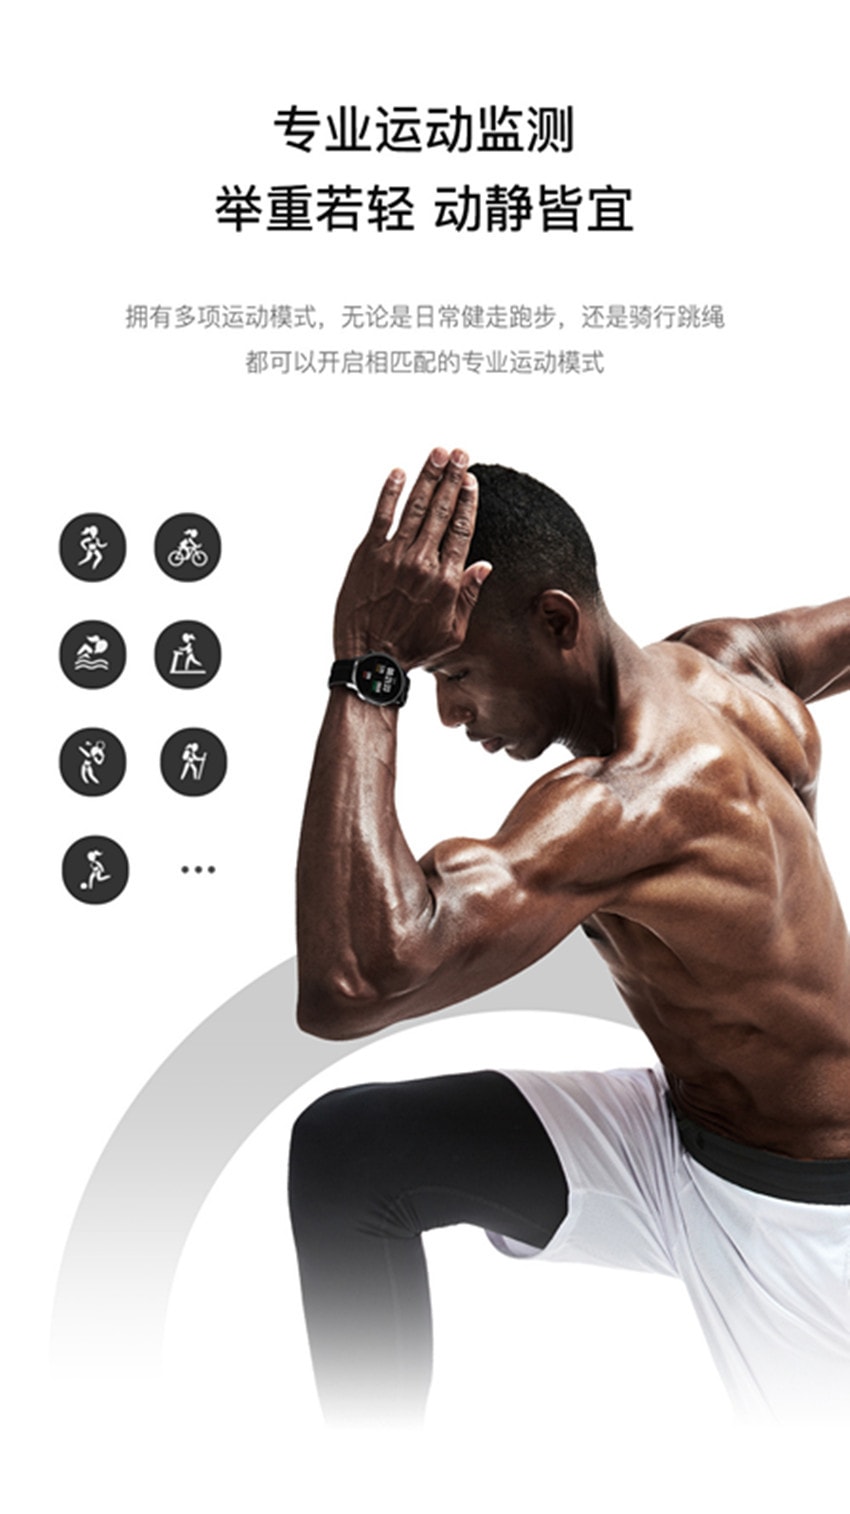 中國 小米 UM93智慧型smart watch華強北S7適用蘋果華為藍牙運動通話手錶 黑色